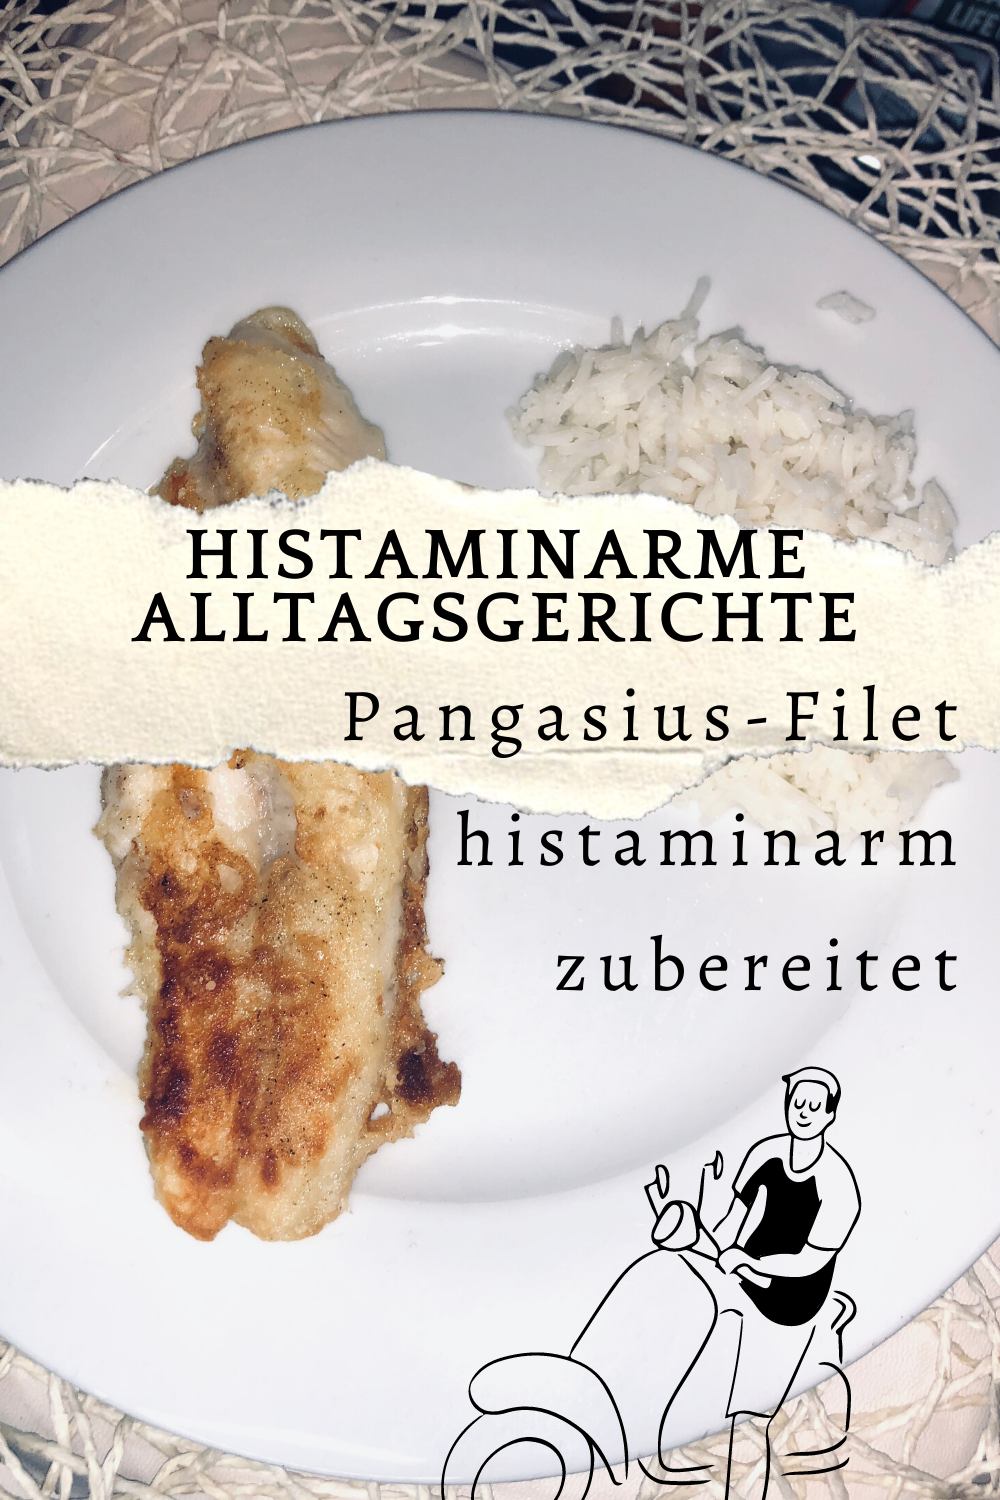 Histaminarme Alltagsgerichte - Pangasius-Filet histaminarm zubereitet